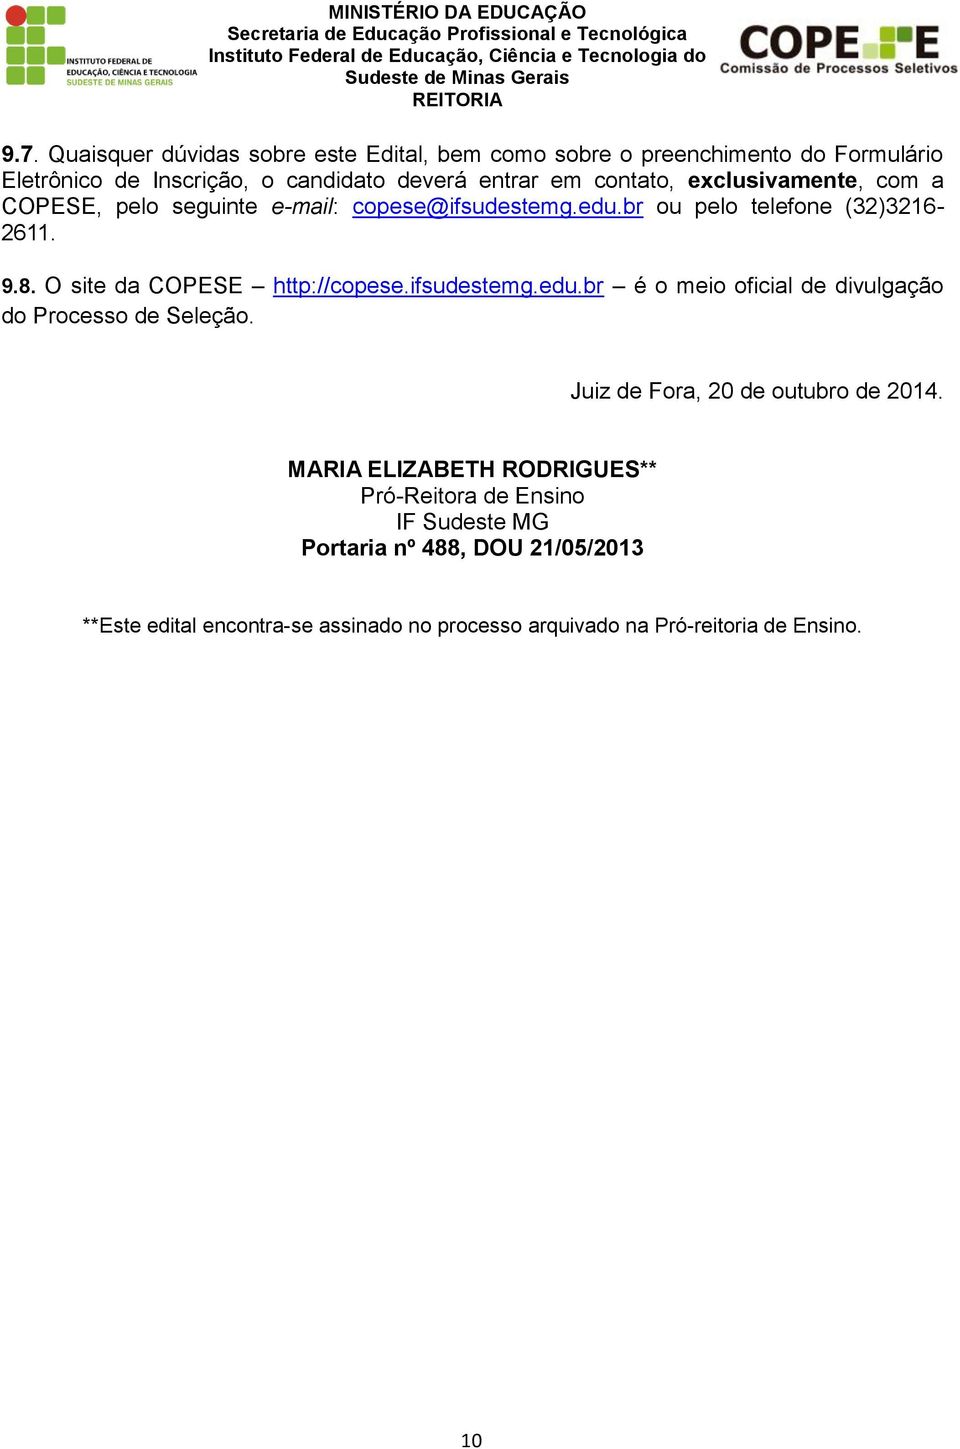 O site da COPESE http://copese.ifsudestemg.edu.br é o oficial de divulgação do Processo de Seleção. Juiz de Fora, 20 de outubro de 2014.